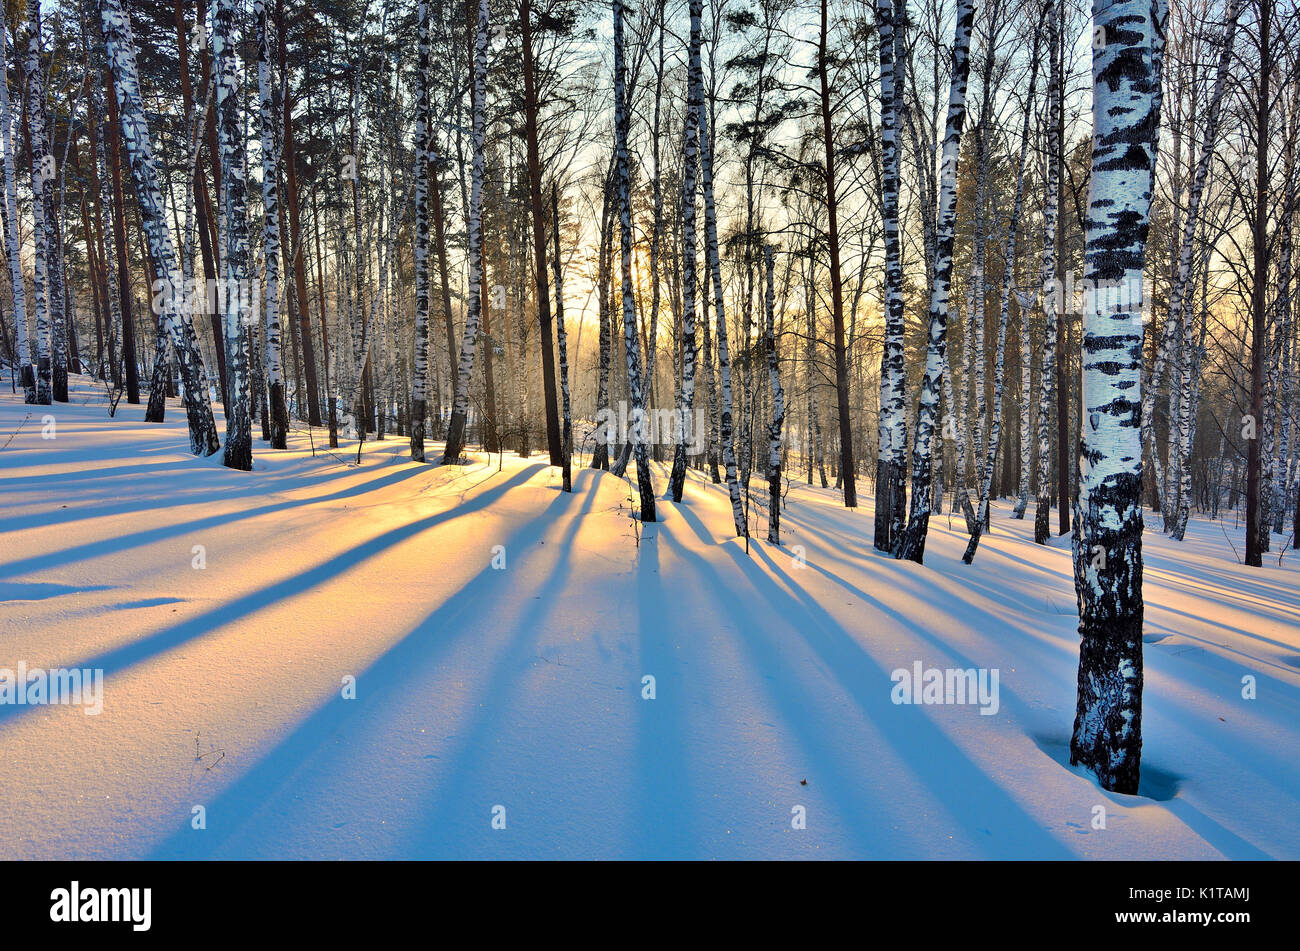 Paisaje invernal - Sunset en el bosque de abedules. Luz dorada del sol entre los troncos blancos de los abedules y sombra azul sobre el blanco de la nieve. Foto de stock